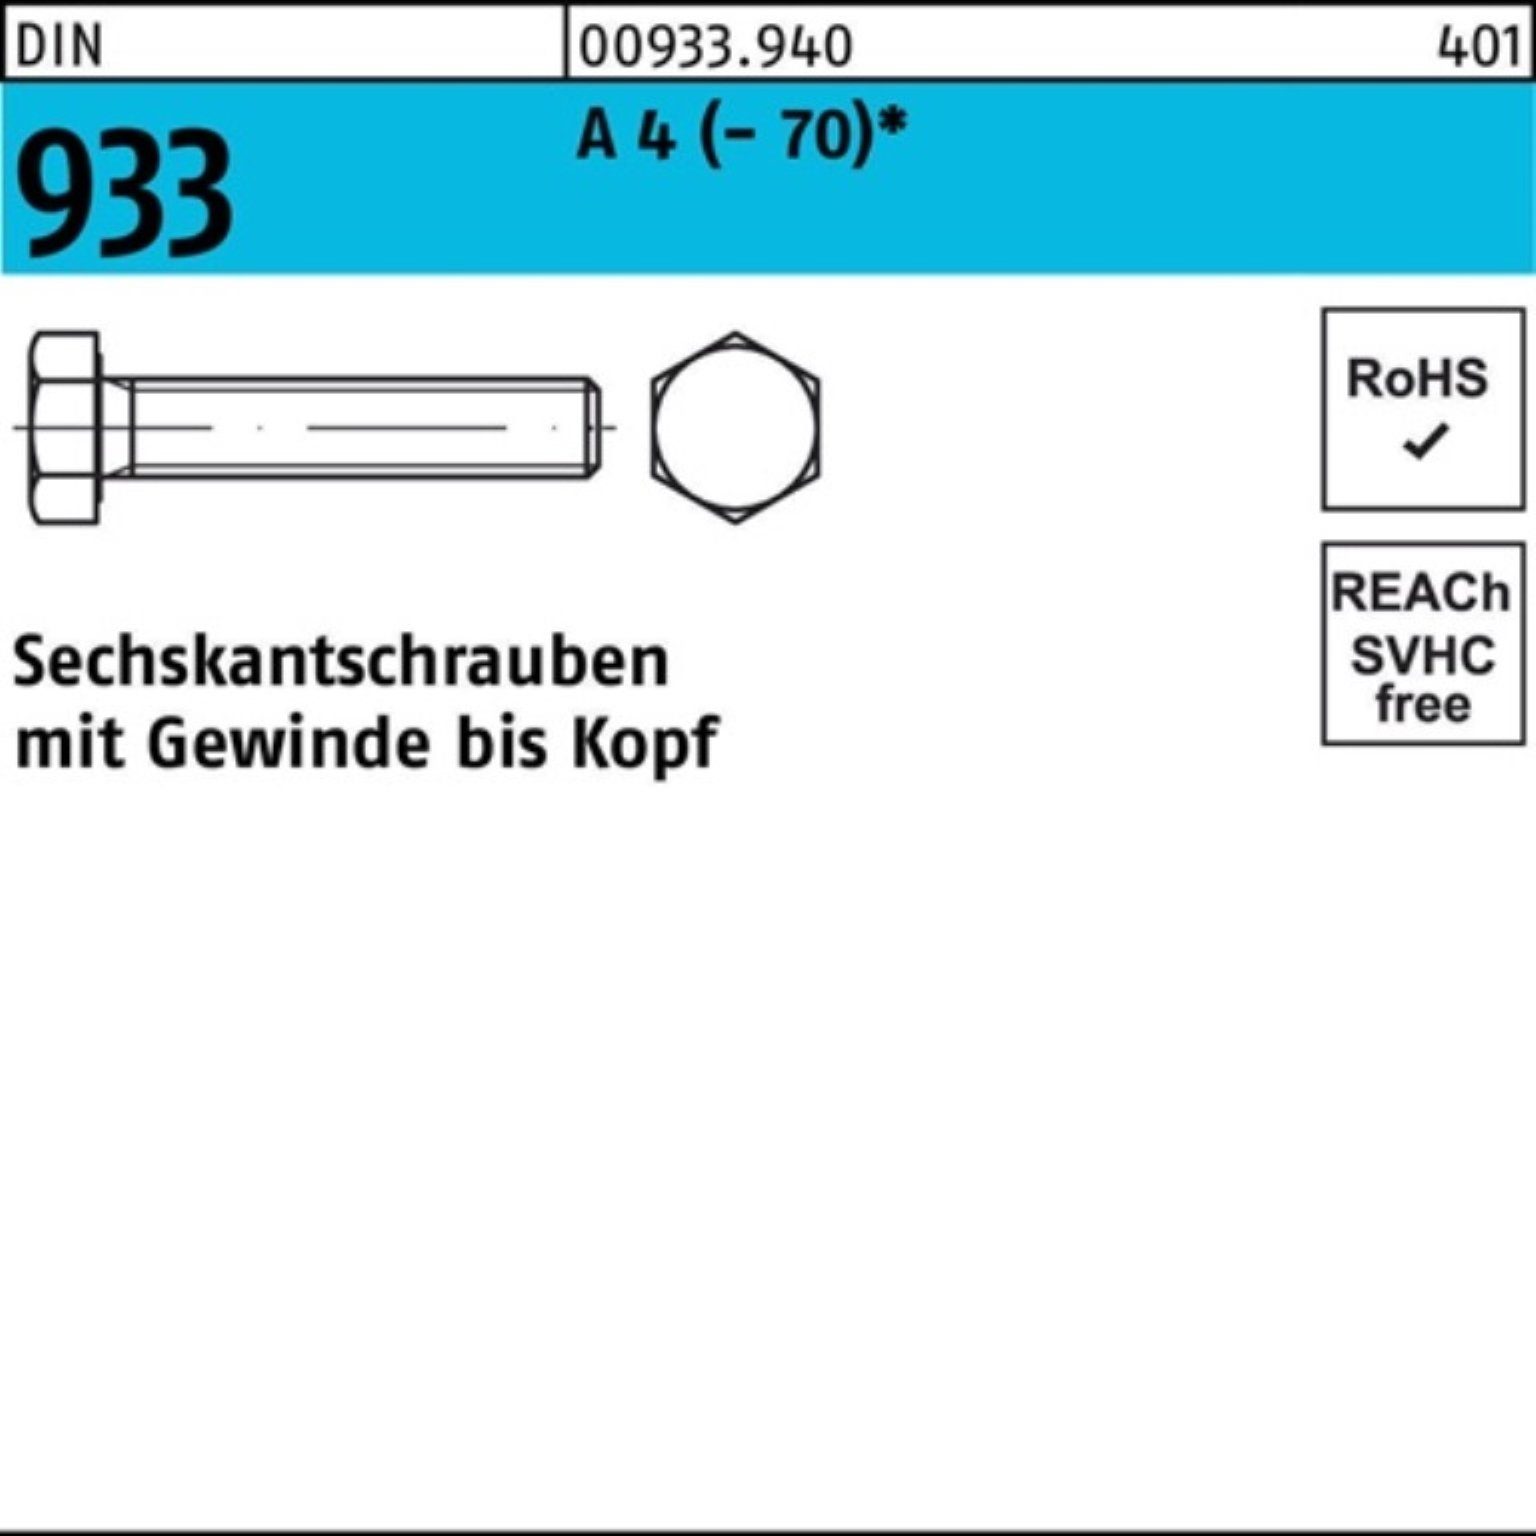 Reyher Sechskantschraube 100er Pack (70) Stück VG 933 DIN 4 100 Sechskantschraube A 10 M3x D